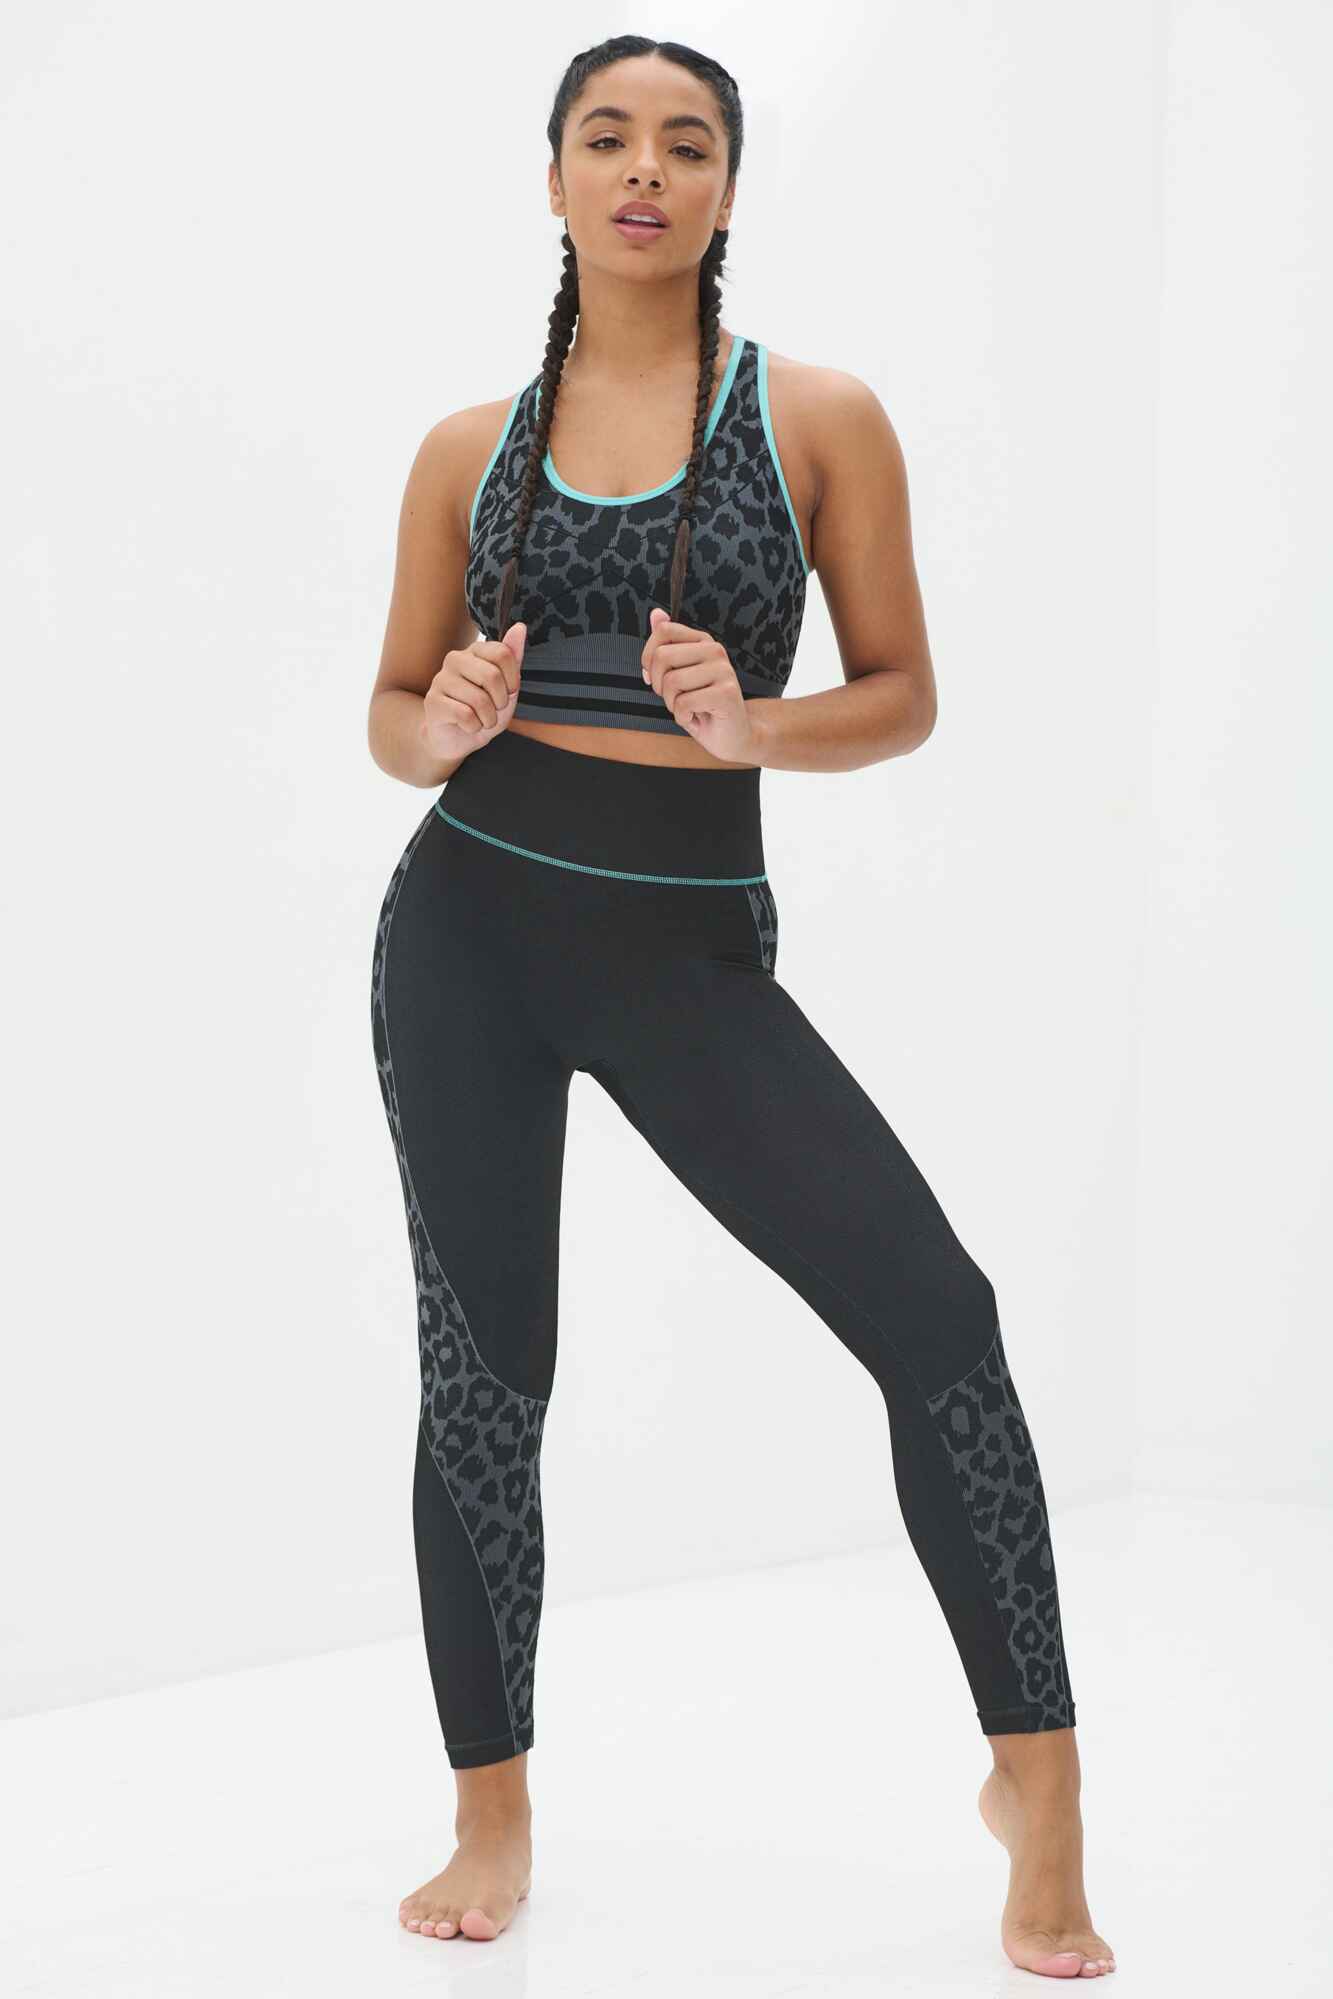 Free Leaper Leggings 7//8 con Bolsillos Mujer Cintura Alta Pantalón Deportivo Yoga y Pilates Mallas para Fitness Running